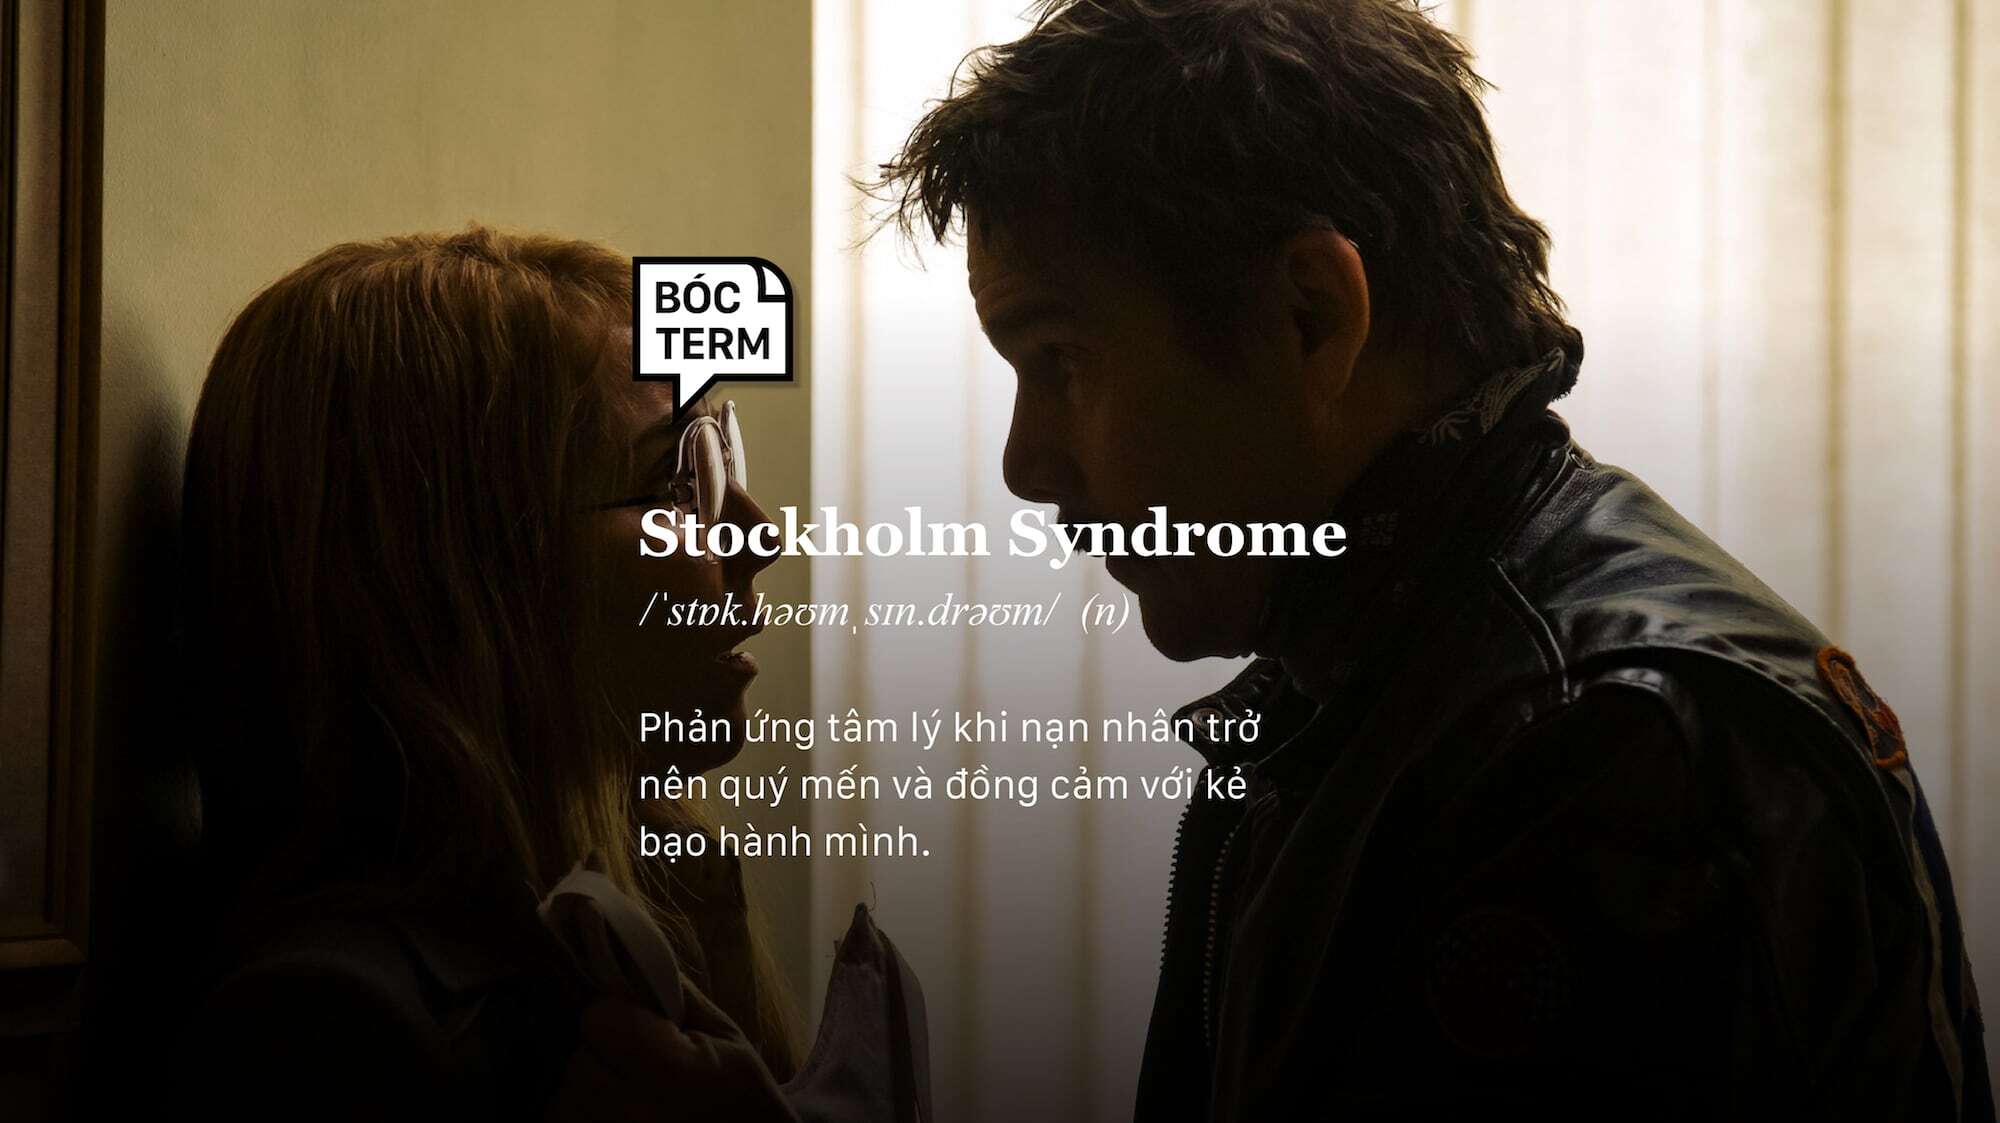 stockholm syndrome là gì